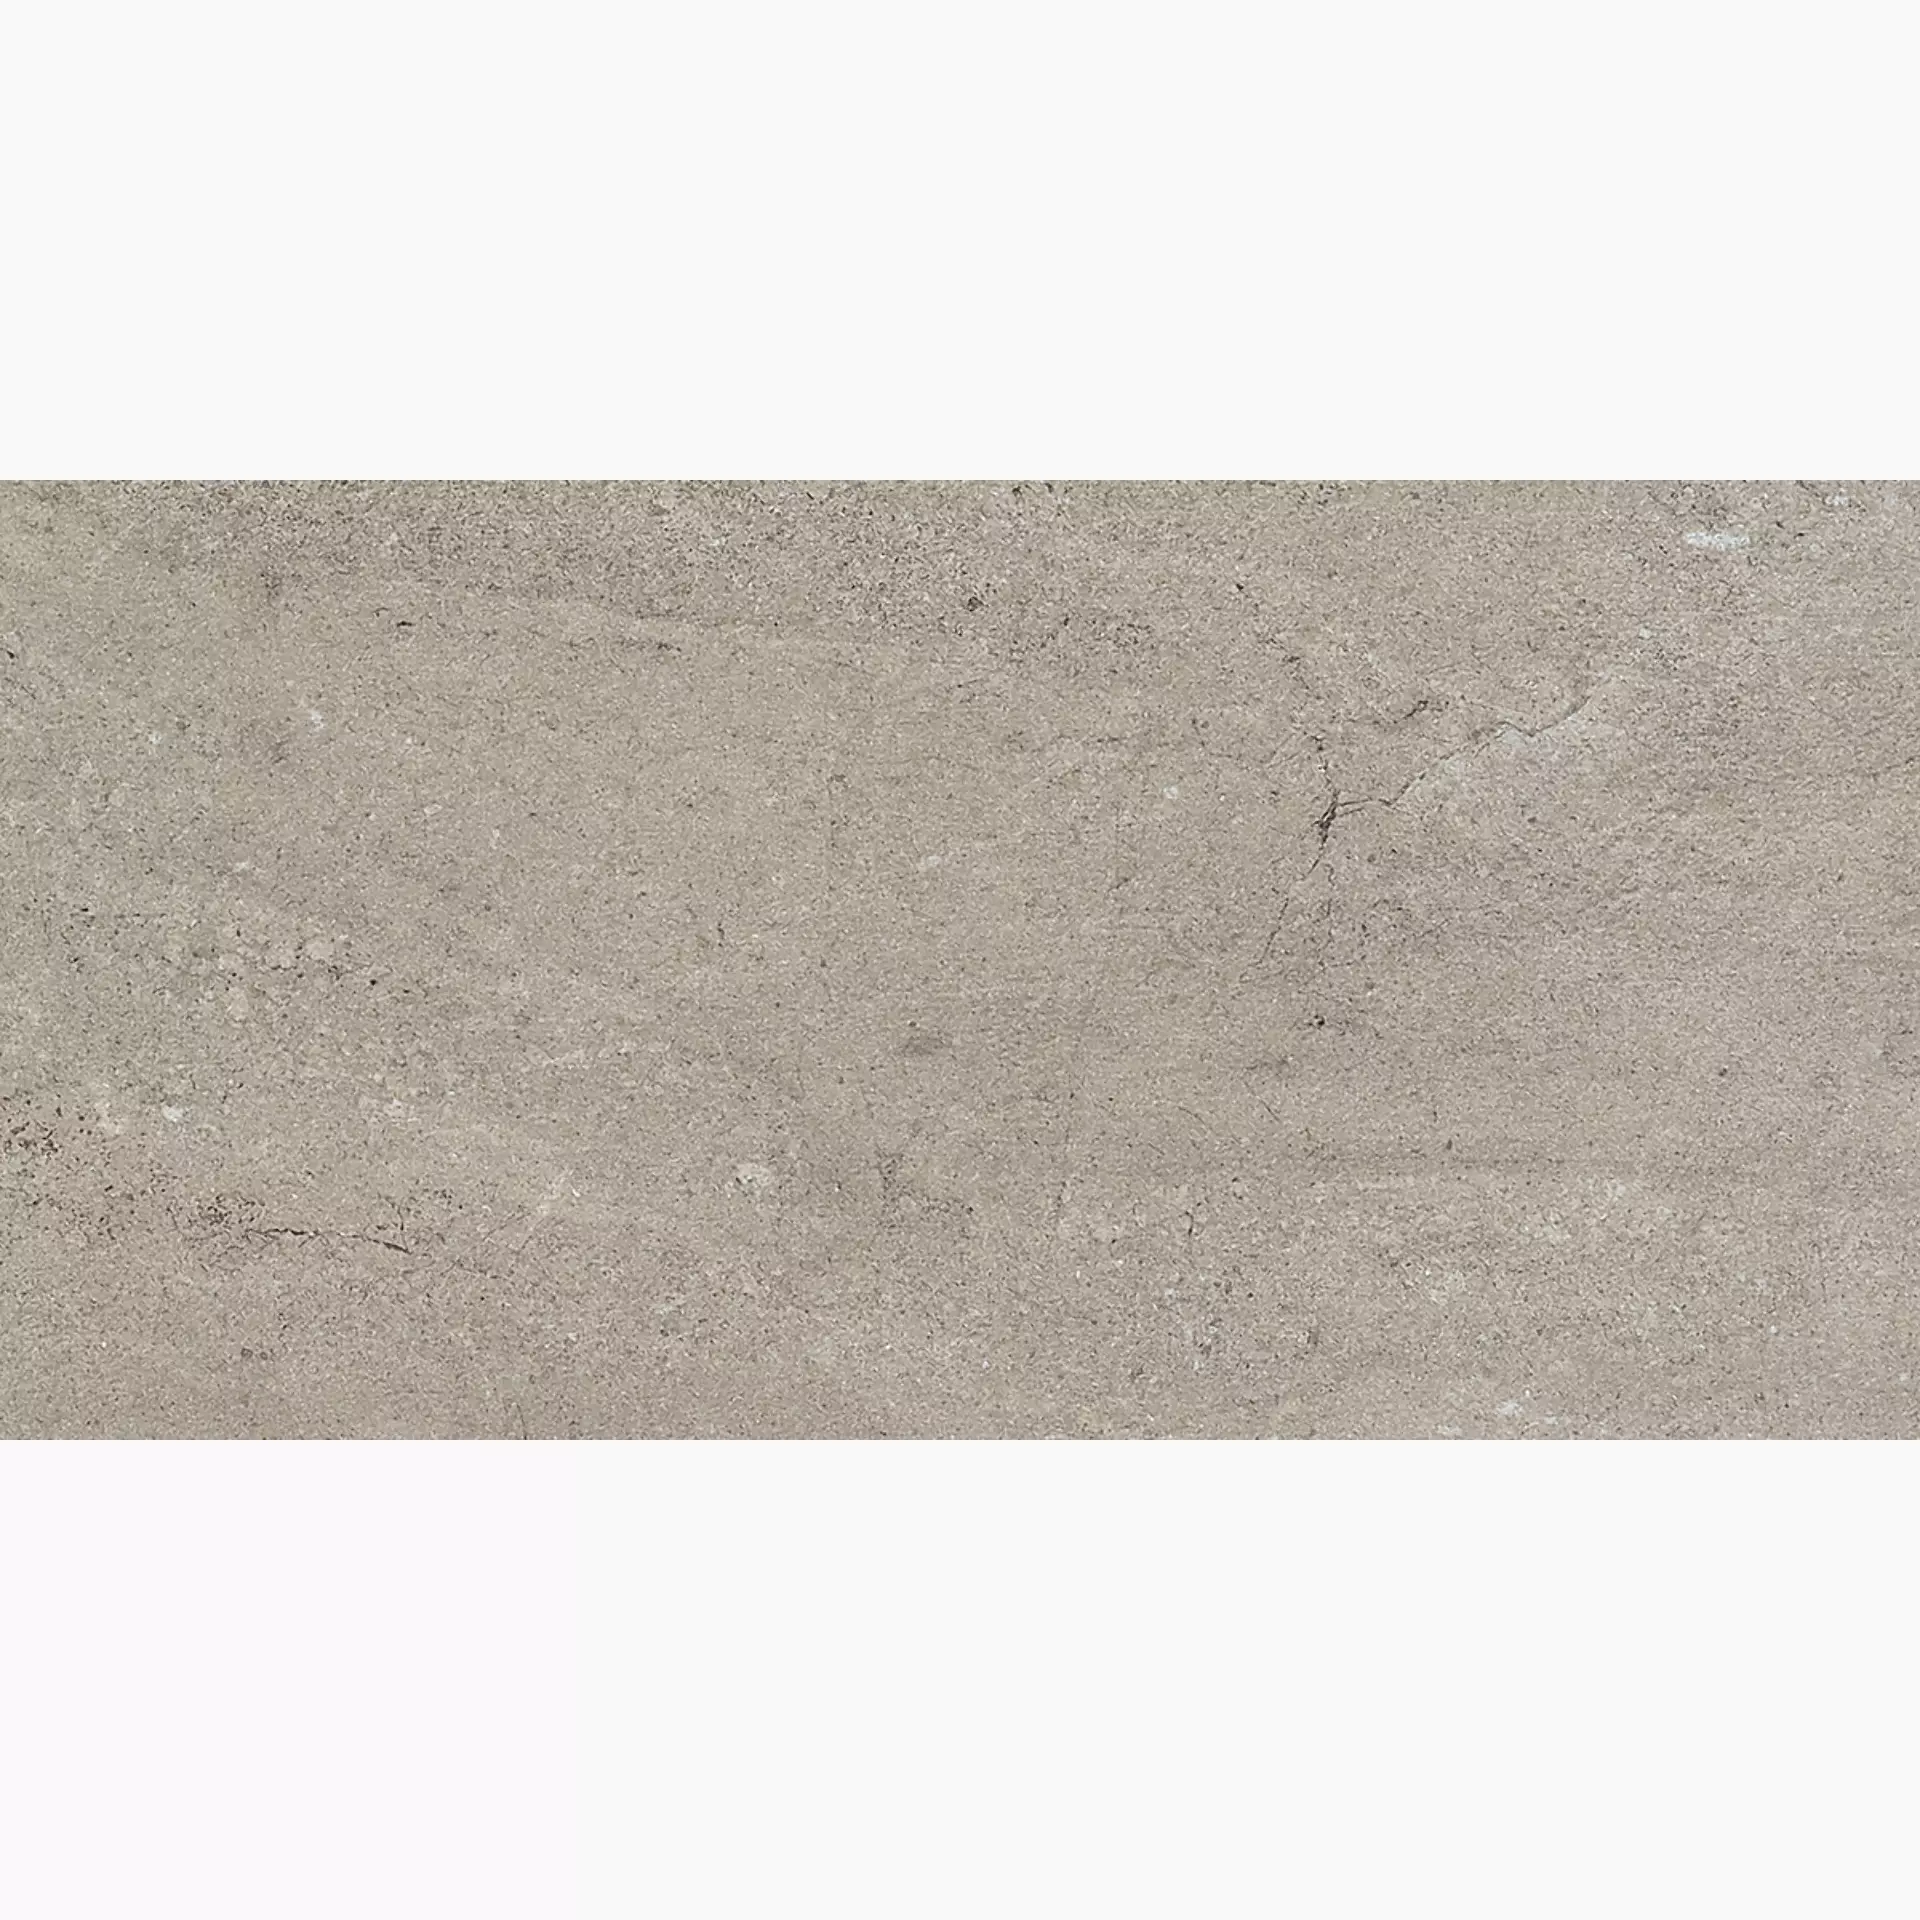 Gigacer Quarry Gravel Stone Matt 6QUAGRASTMAT3060 30x60cm 6mm